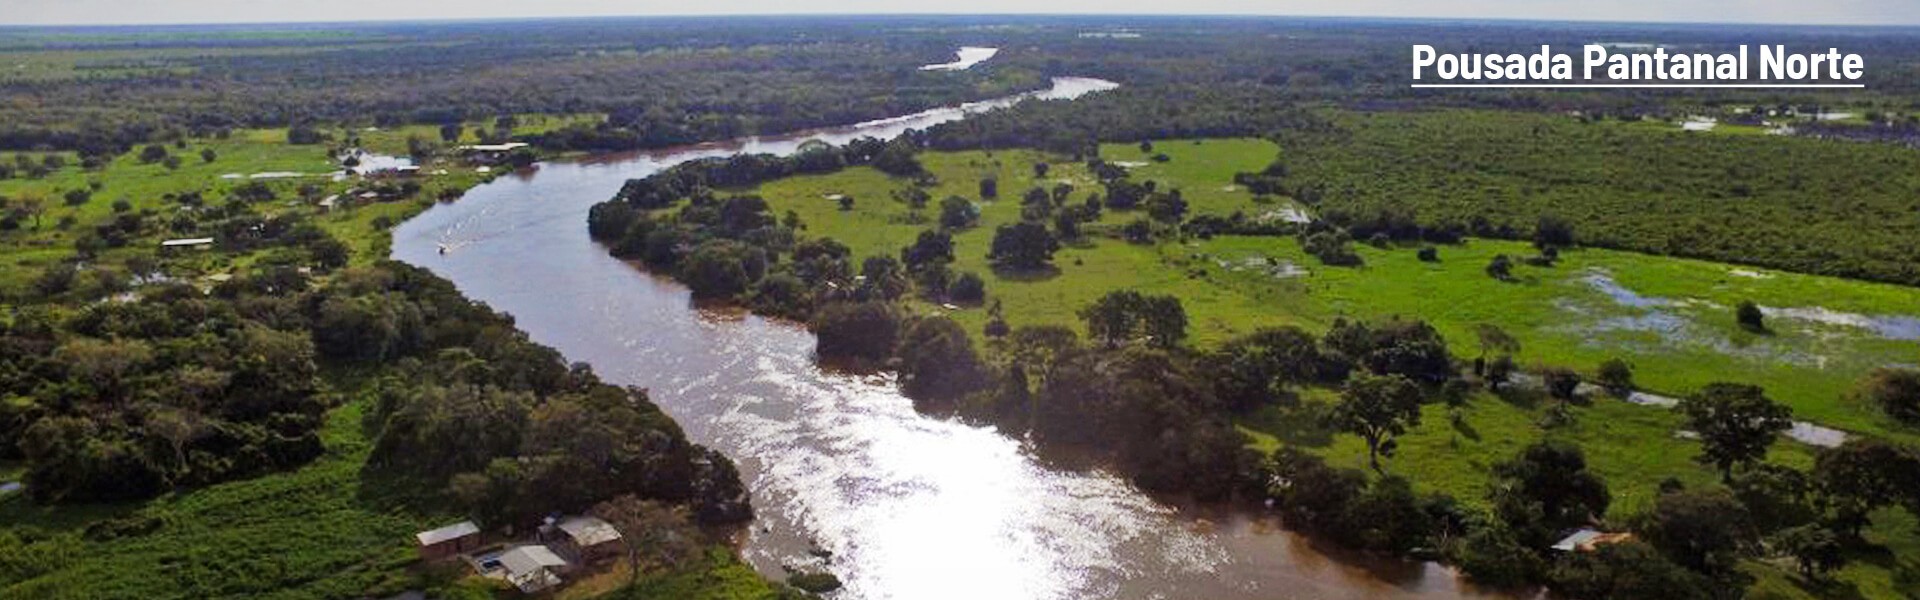 Pousada Pantanal Norte começa parceria com a Fish TV